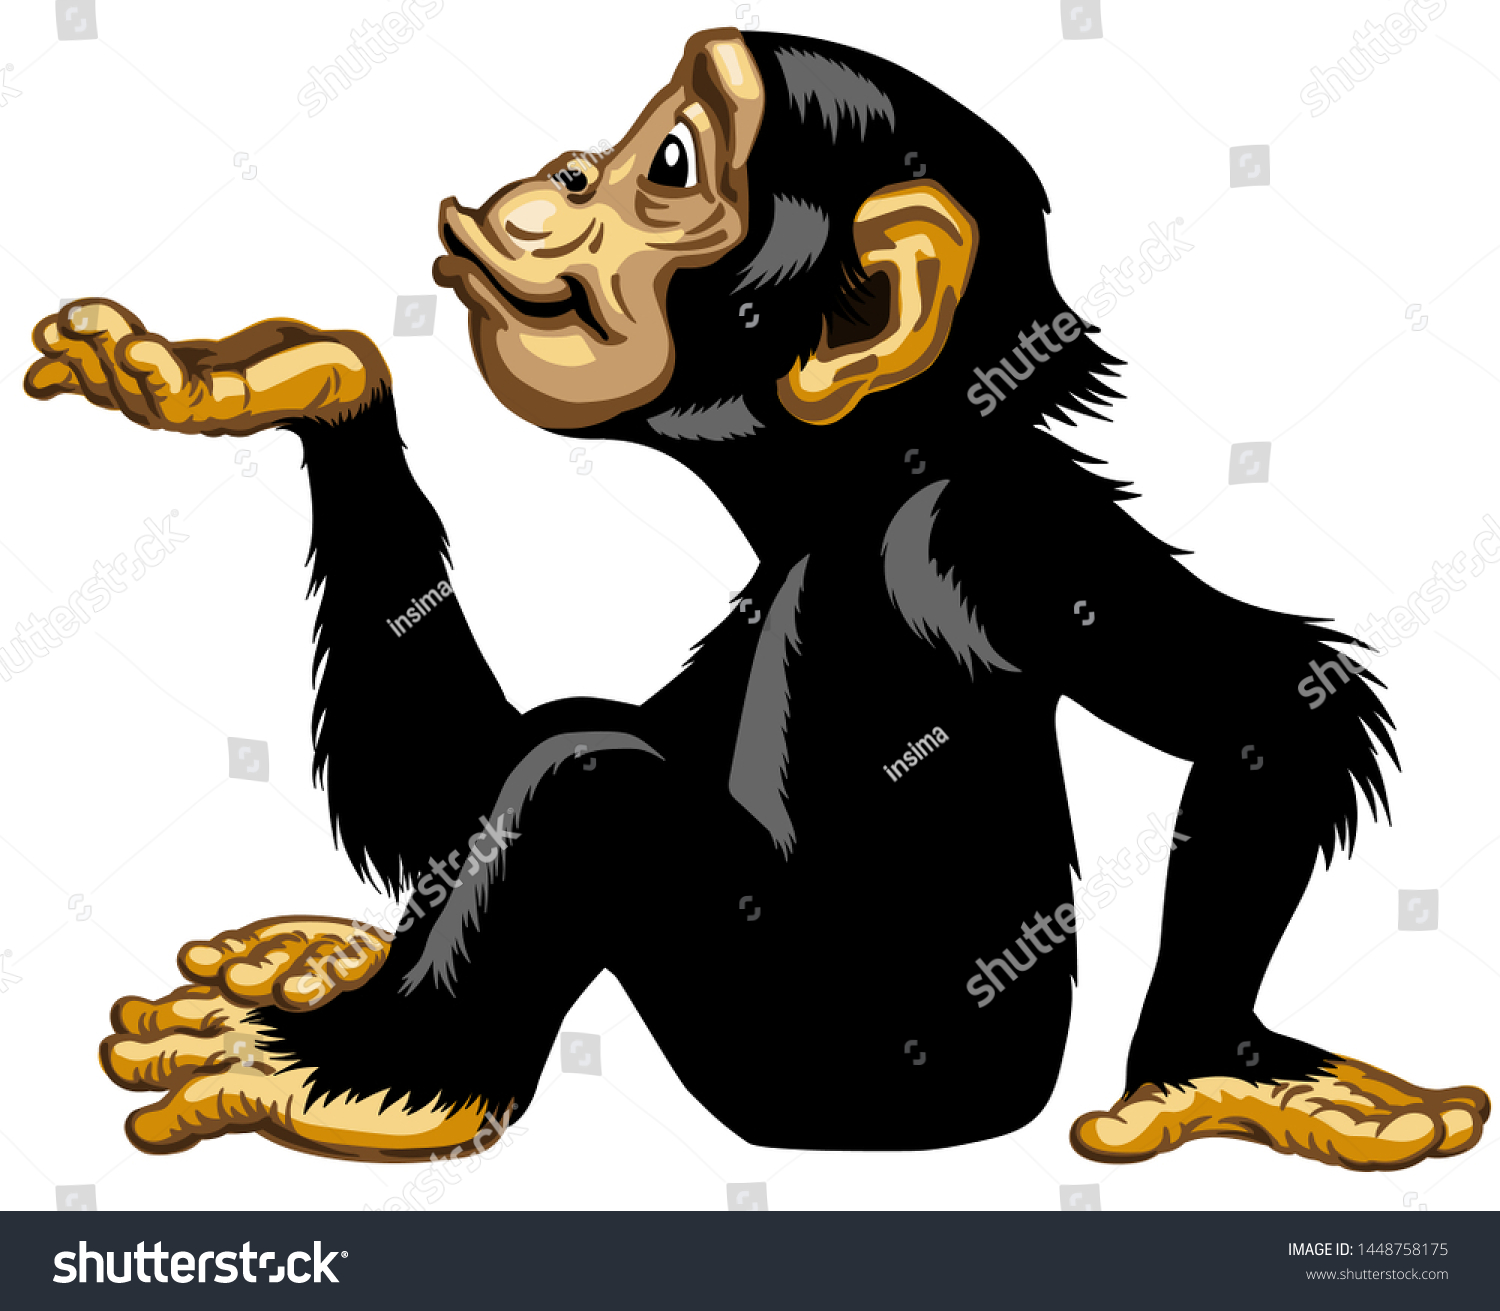 手のひらを空にしたままにした漫画のチンパンジー 座った姿勢でエアーキスをする大猿かチンパンジー猿 ポジティブな魅力的な喜びと幸せな感情 側面図分離型ベクターイラスト のベクター画像素材 ロイヤリティフリー